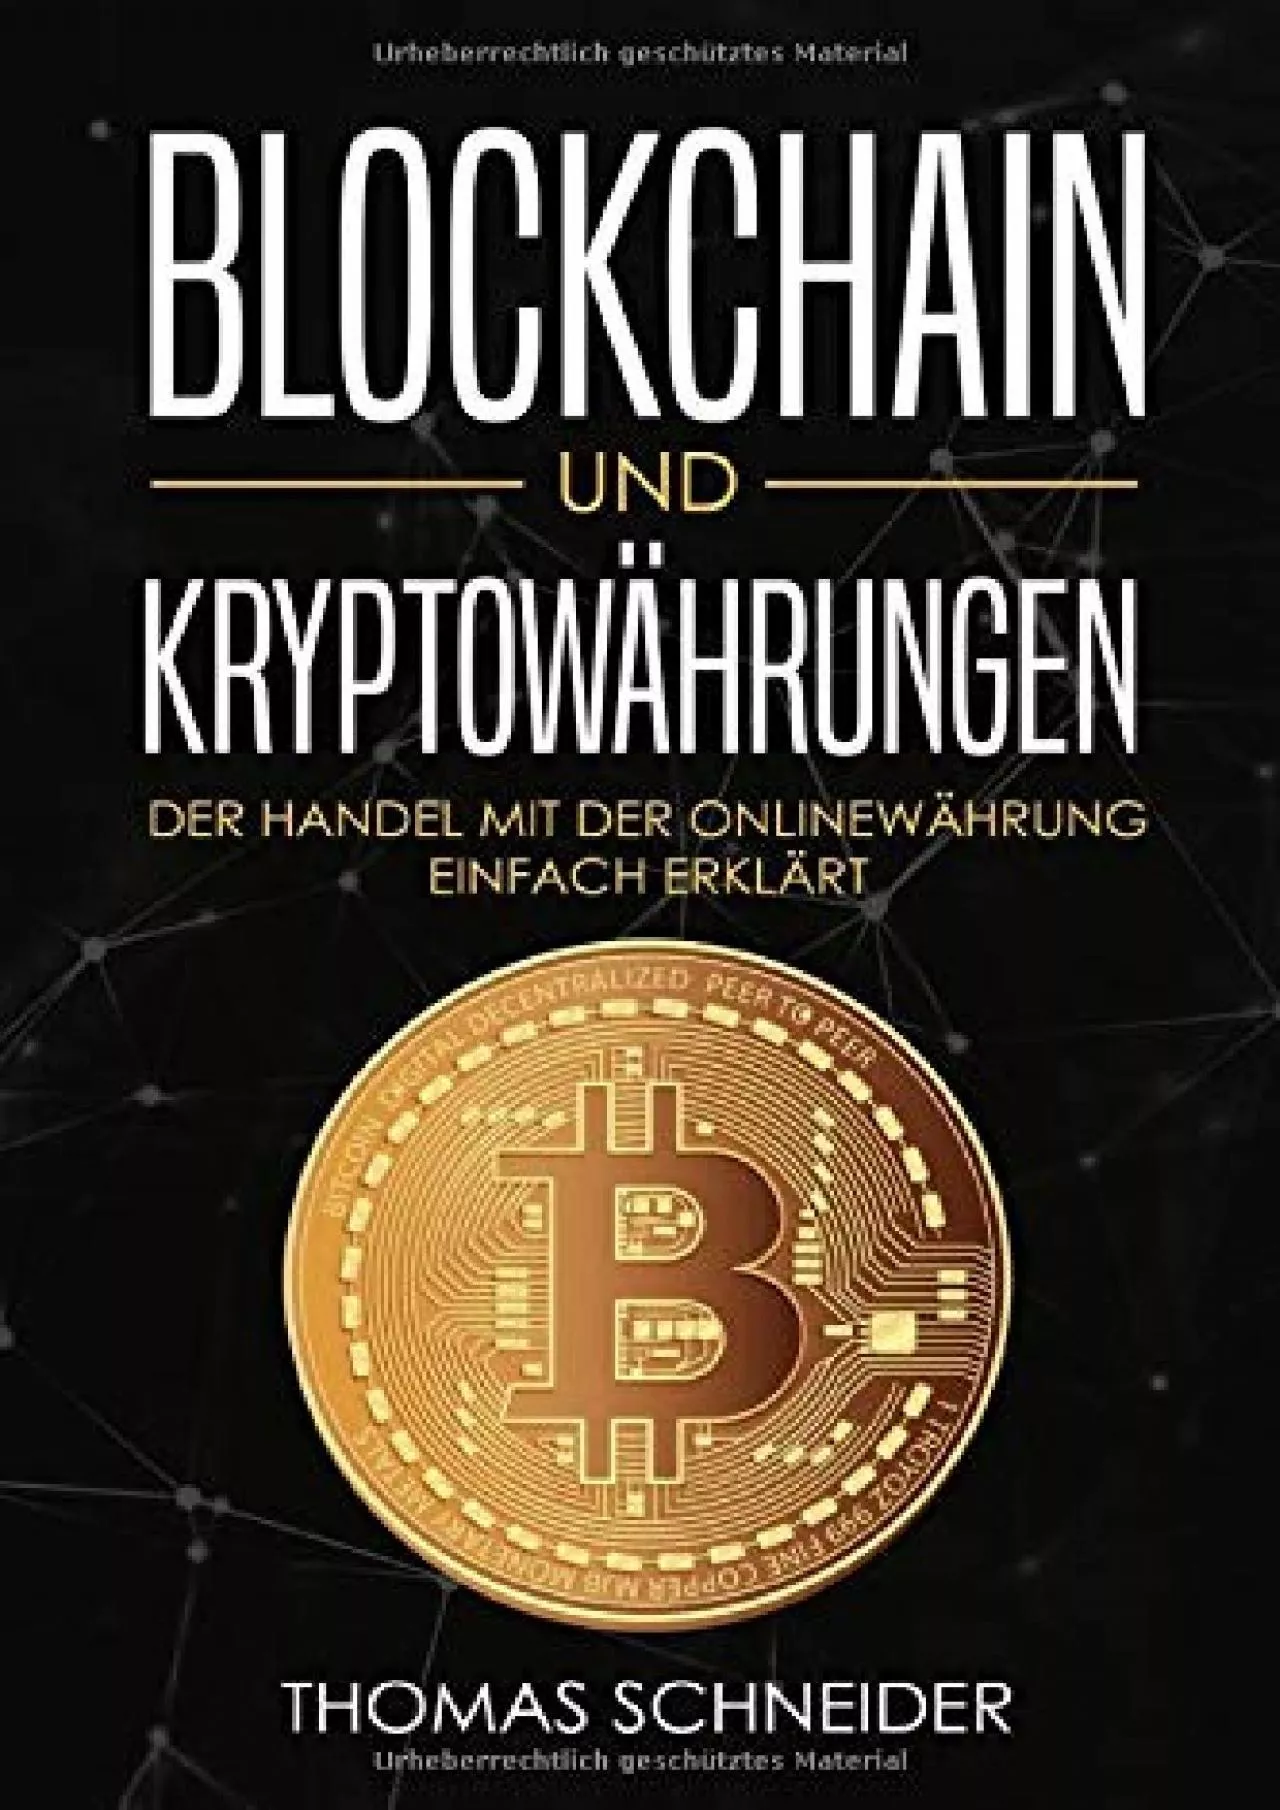 (BOOS)-Blockchain und Kryptowährungen: Der Handel mit der Onlinewährung einfach erklärt.